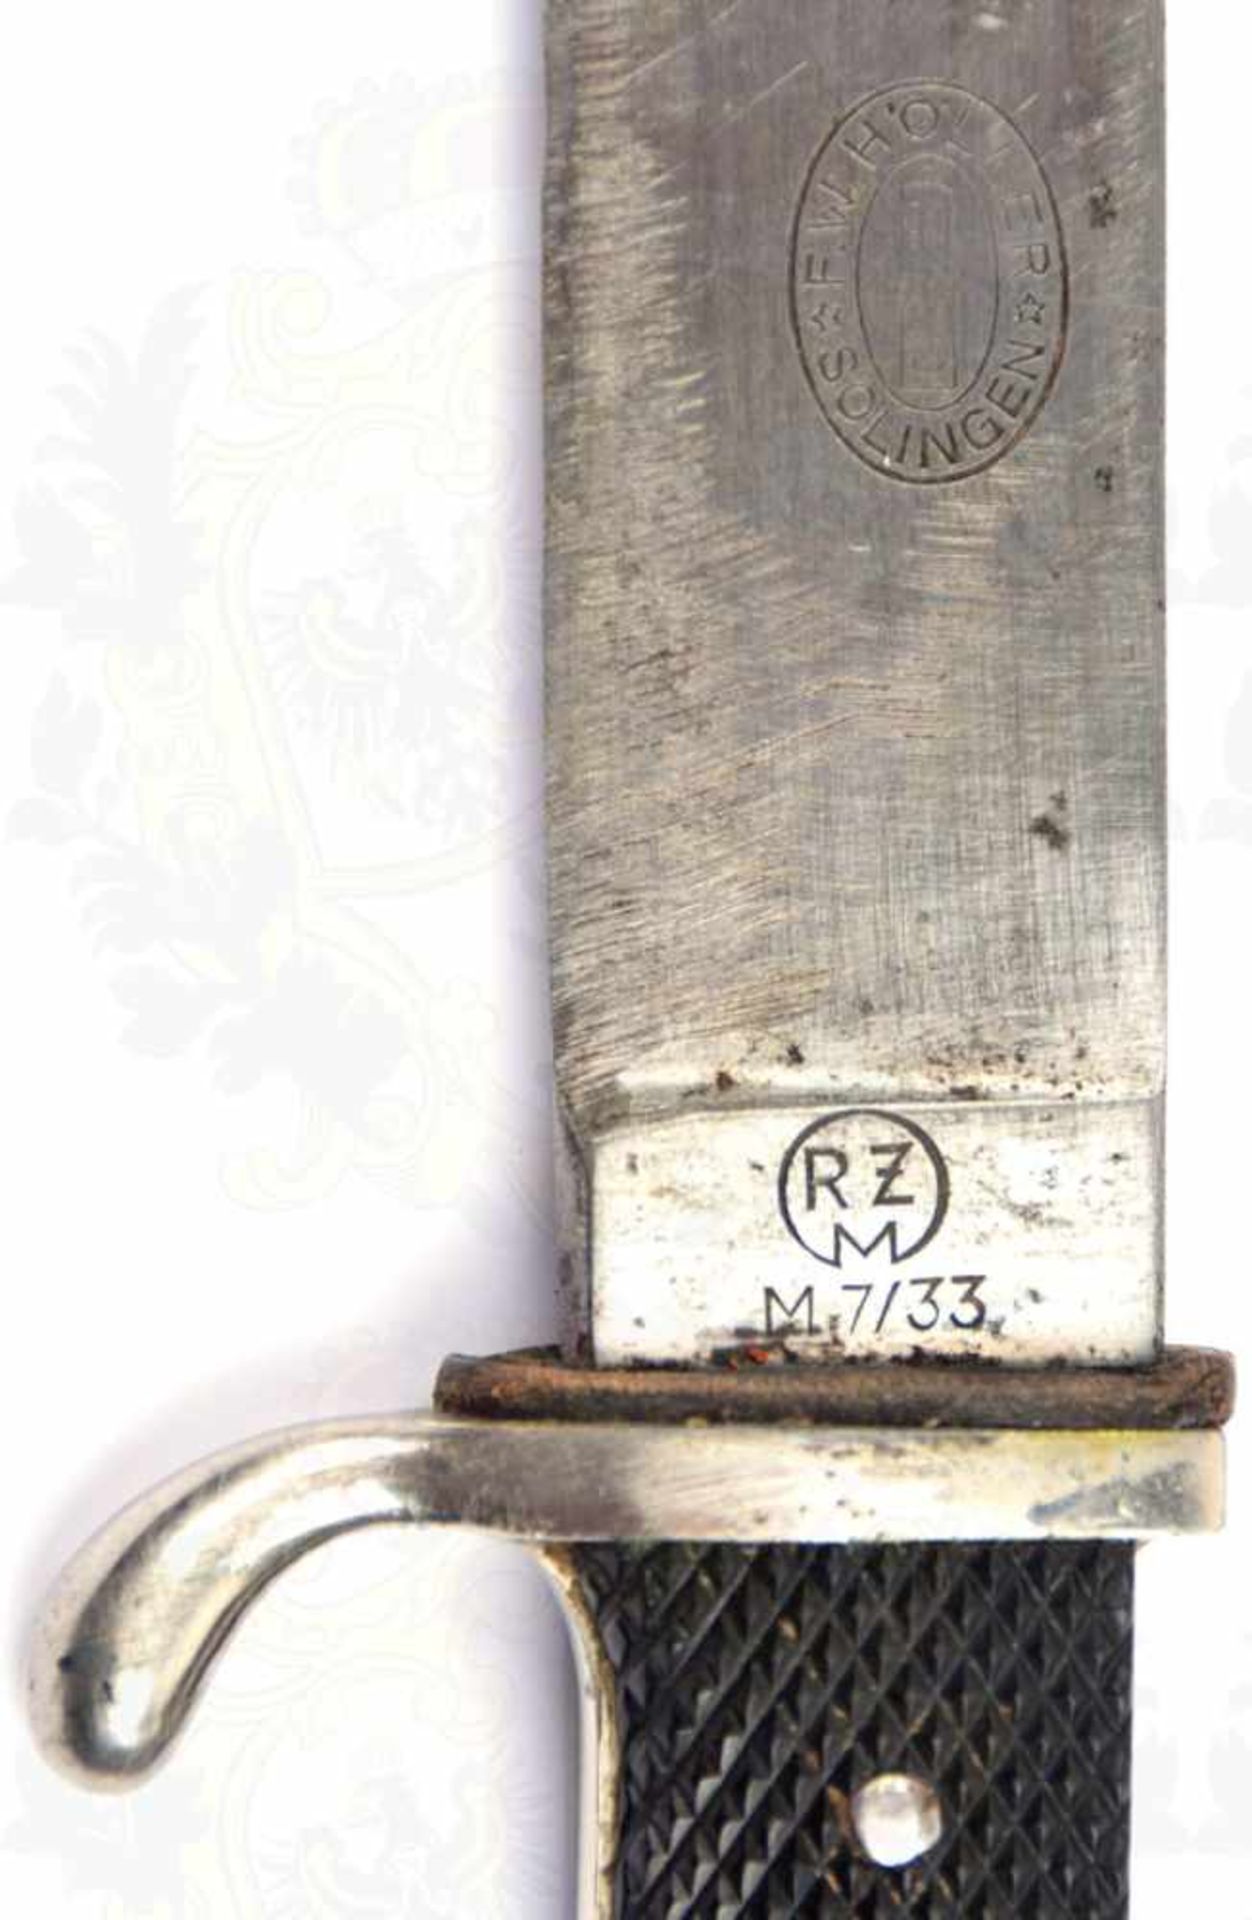 HJ-FAHRTENMESSER, Klinge m. Emblem u. Herst. „RZM M7/33“ (F. W. Höller, Solingen), beschliffen, - Bild 4 aus 4